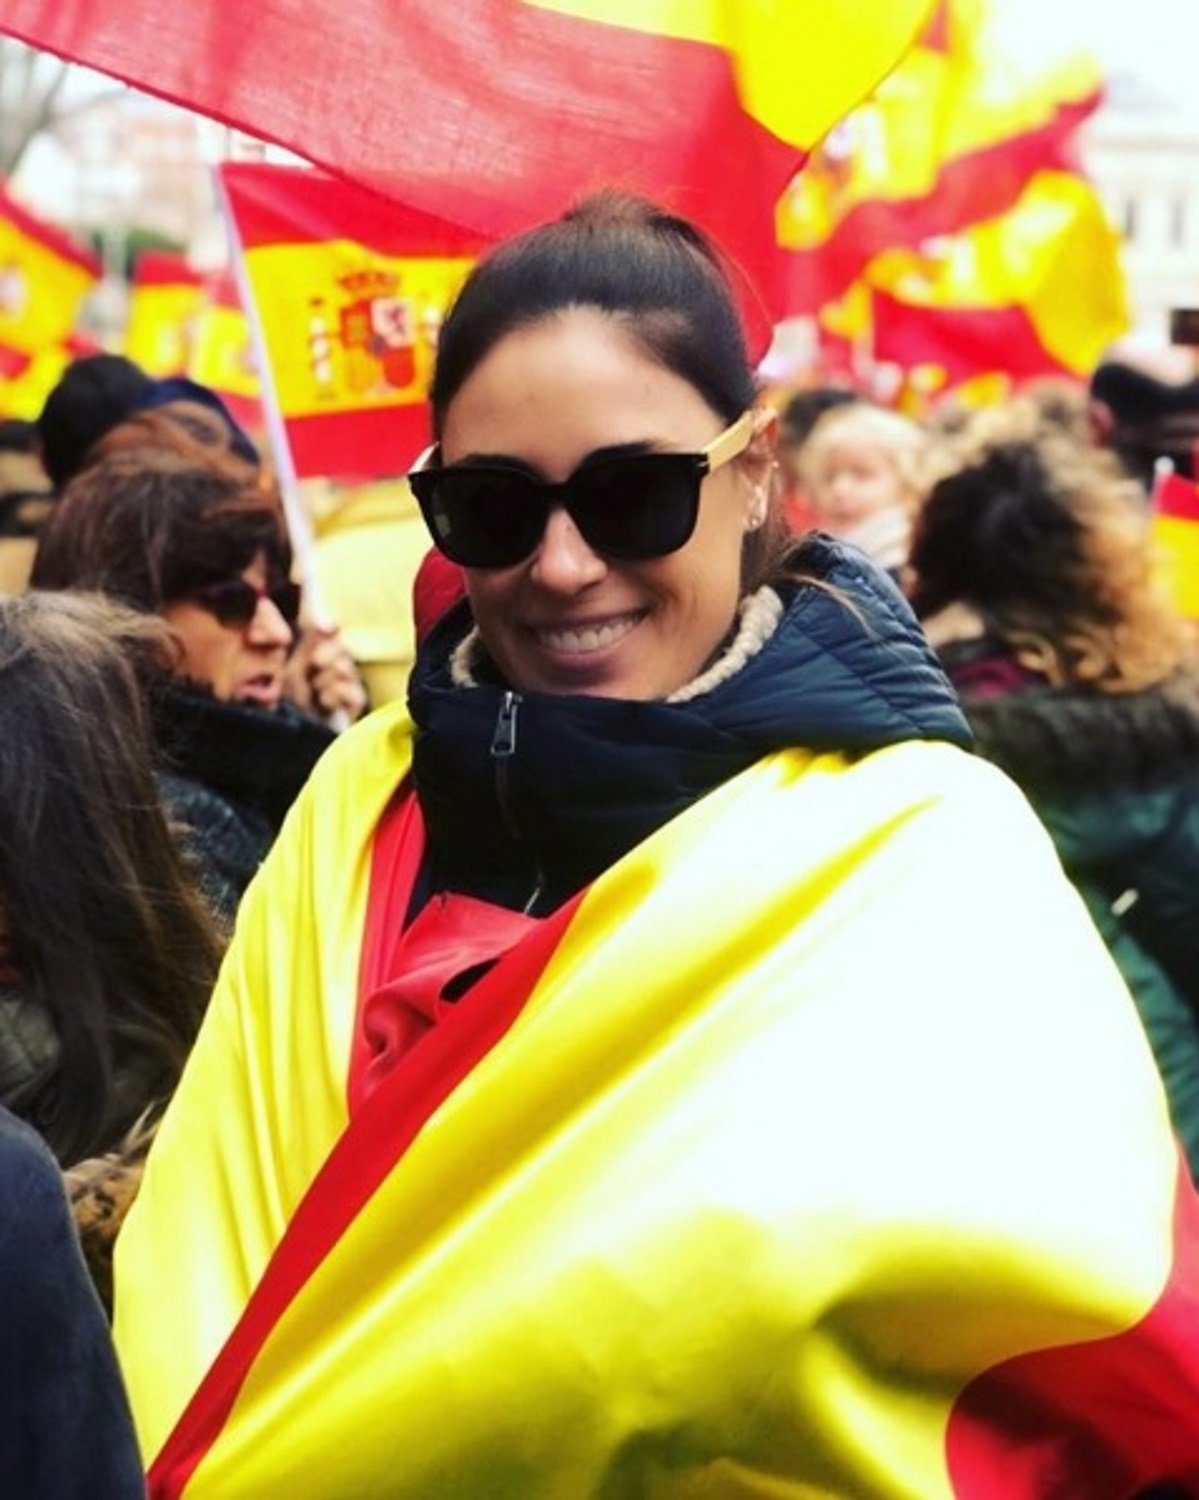 isabel rabago bandera espanya 2 instagram